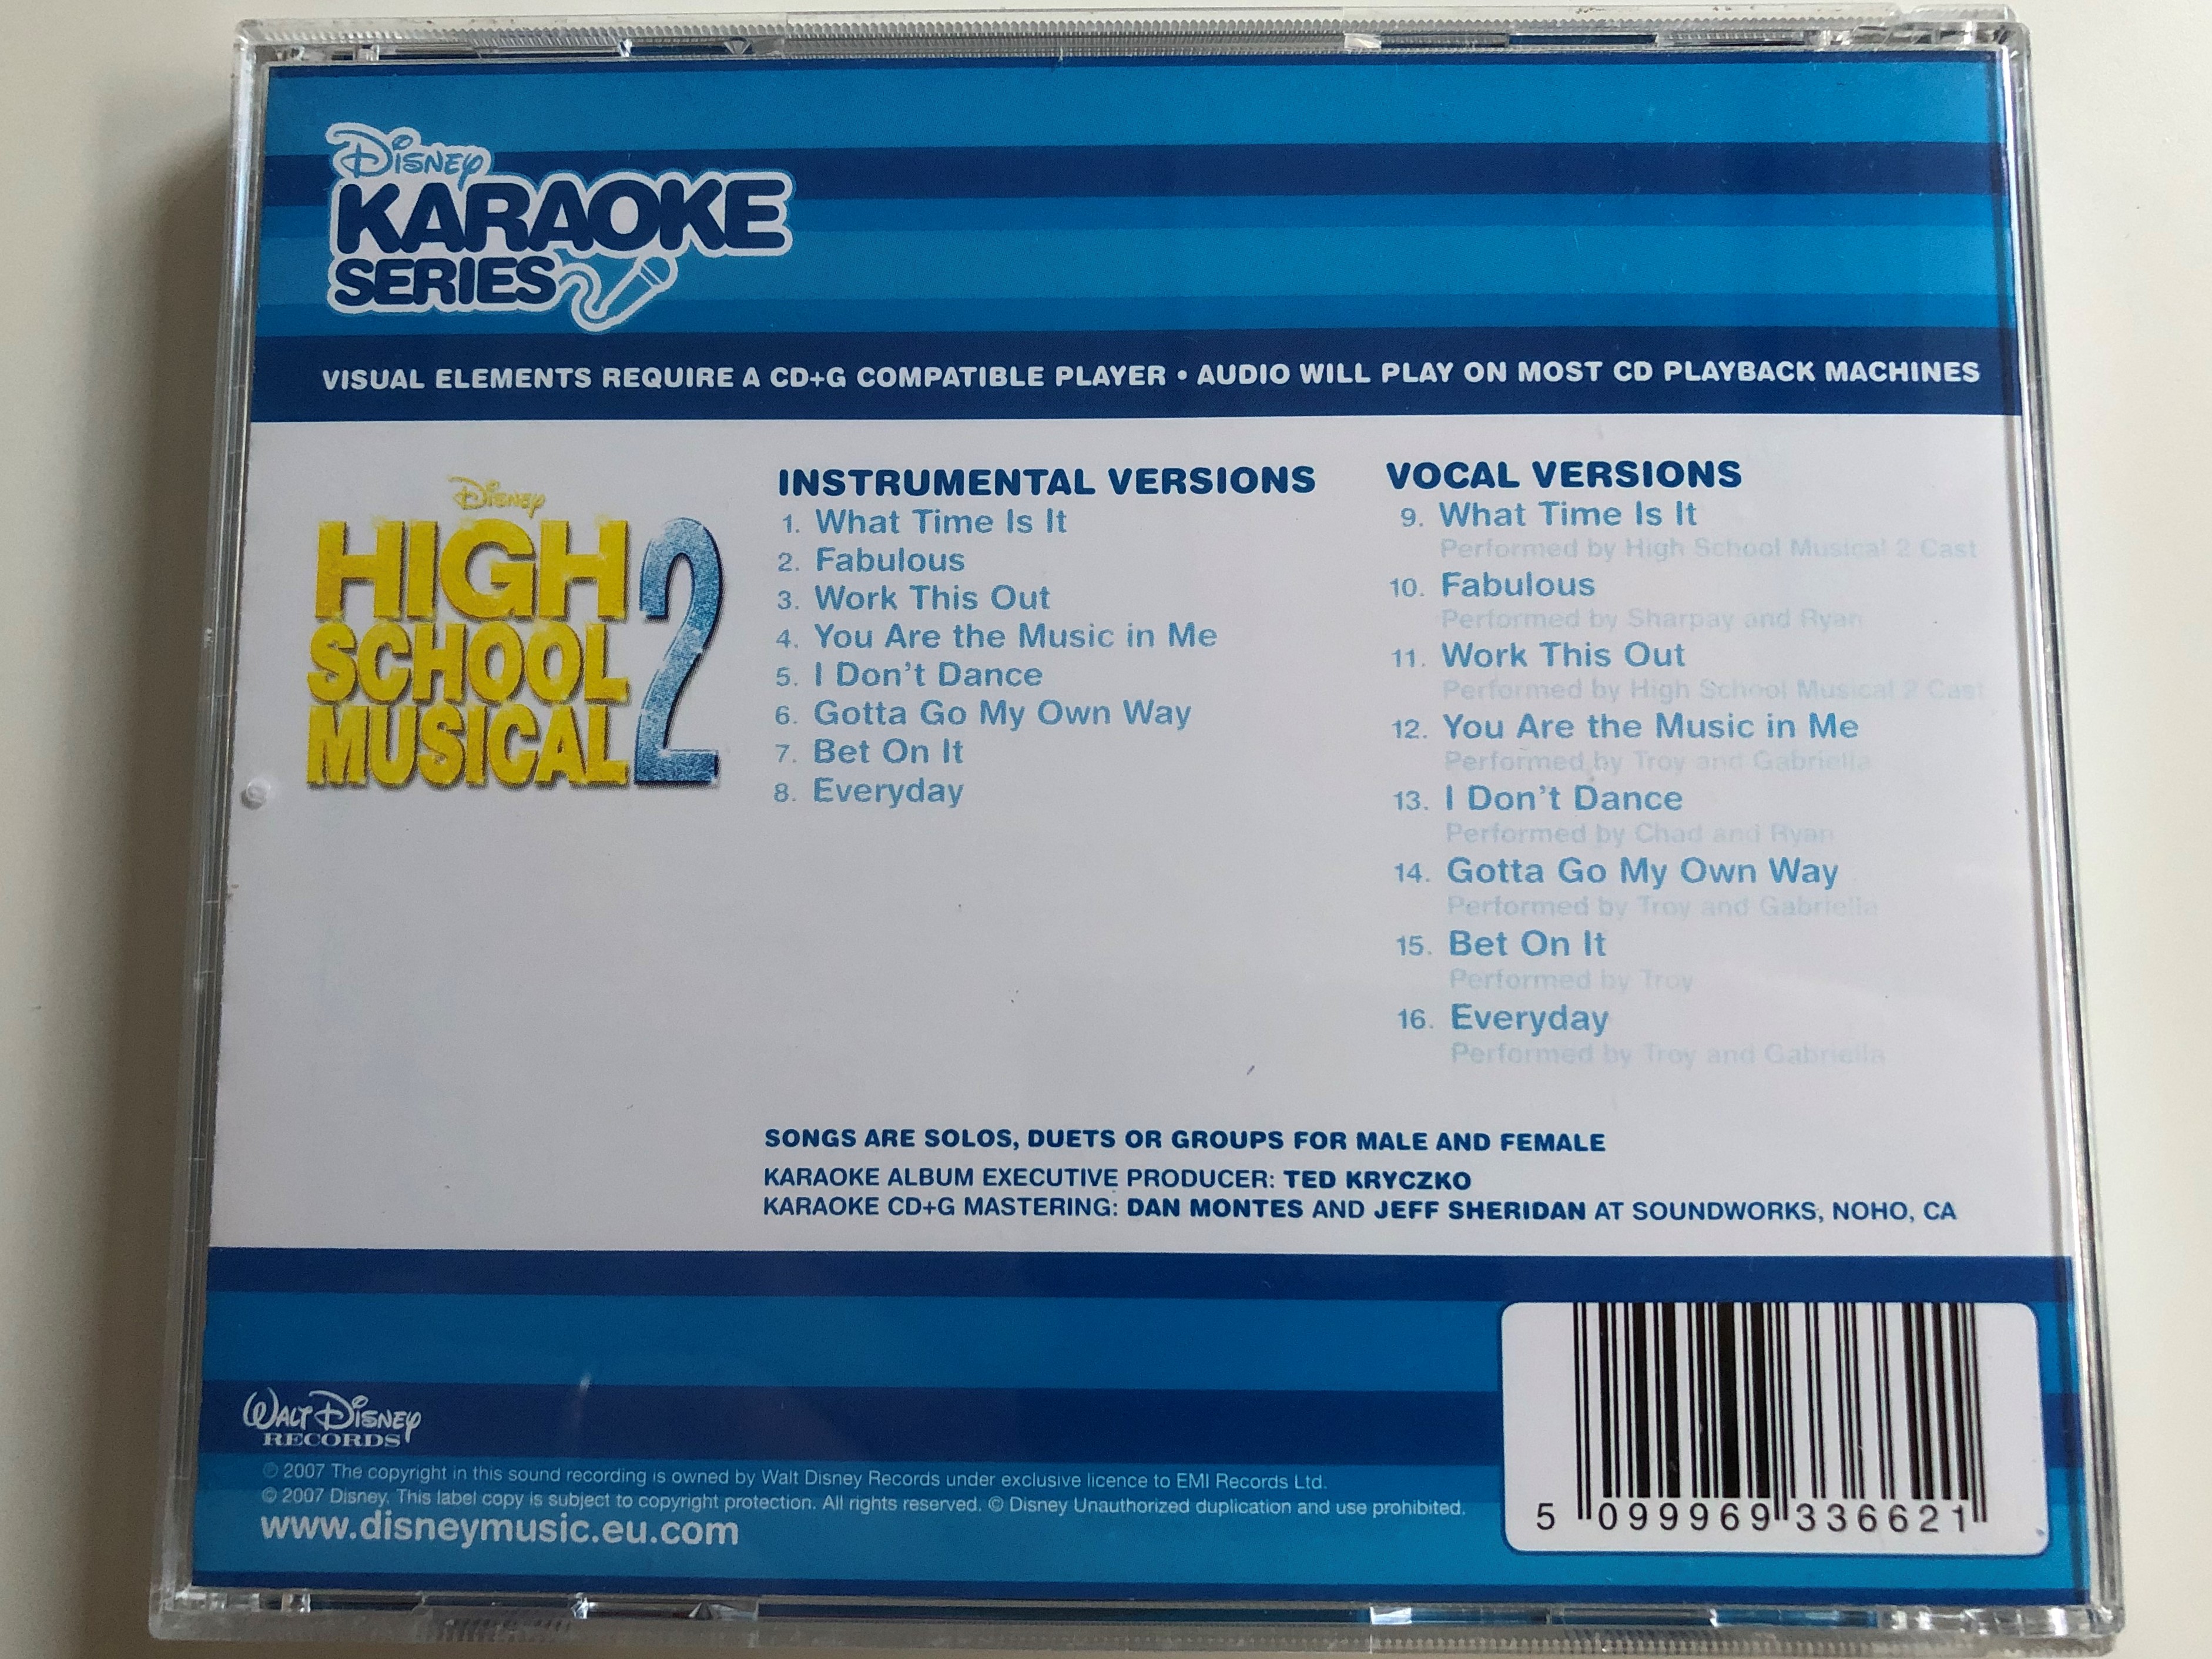 high-school-musical-2-disney-karaoke-series-walt-disney-records-audio-cd-2007-5099969336621-9-.jpg